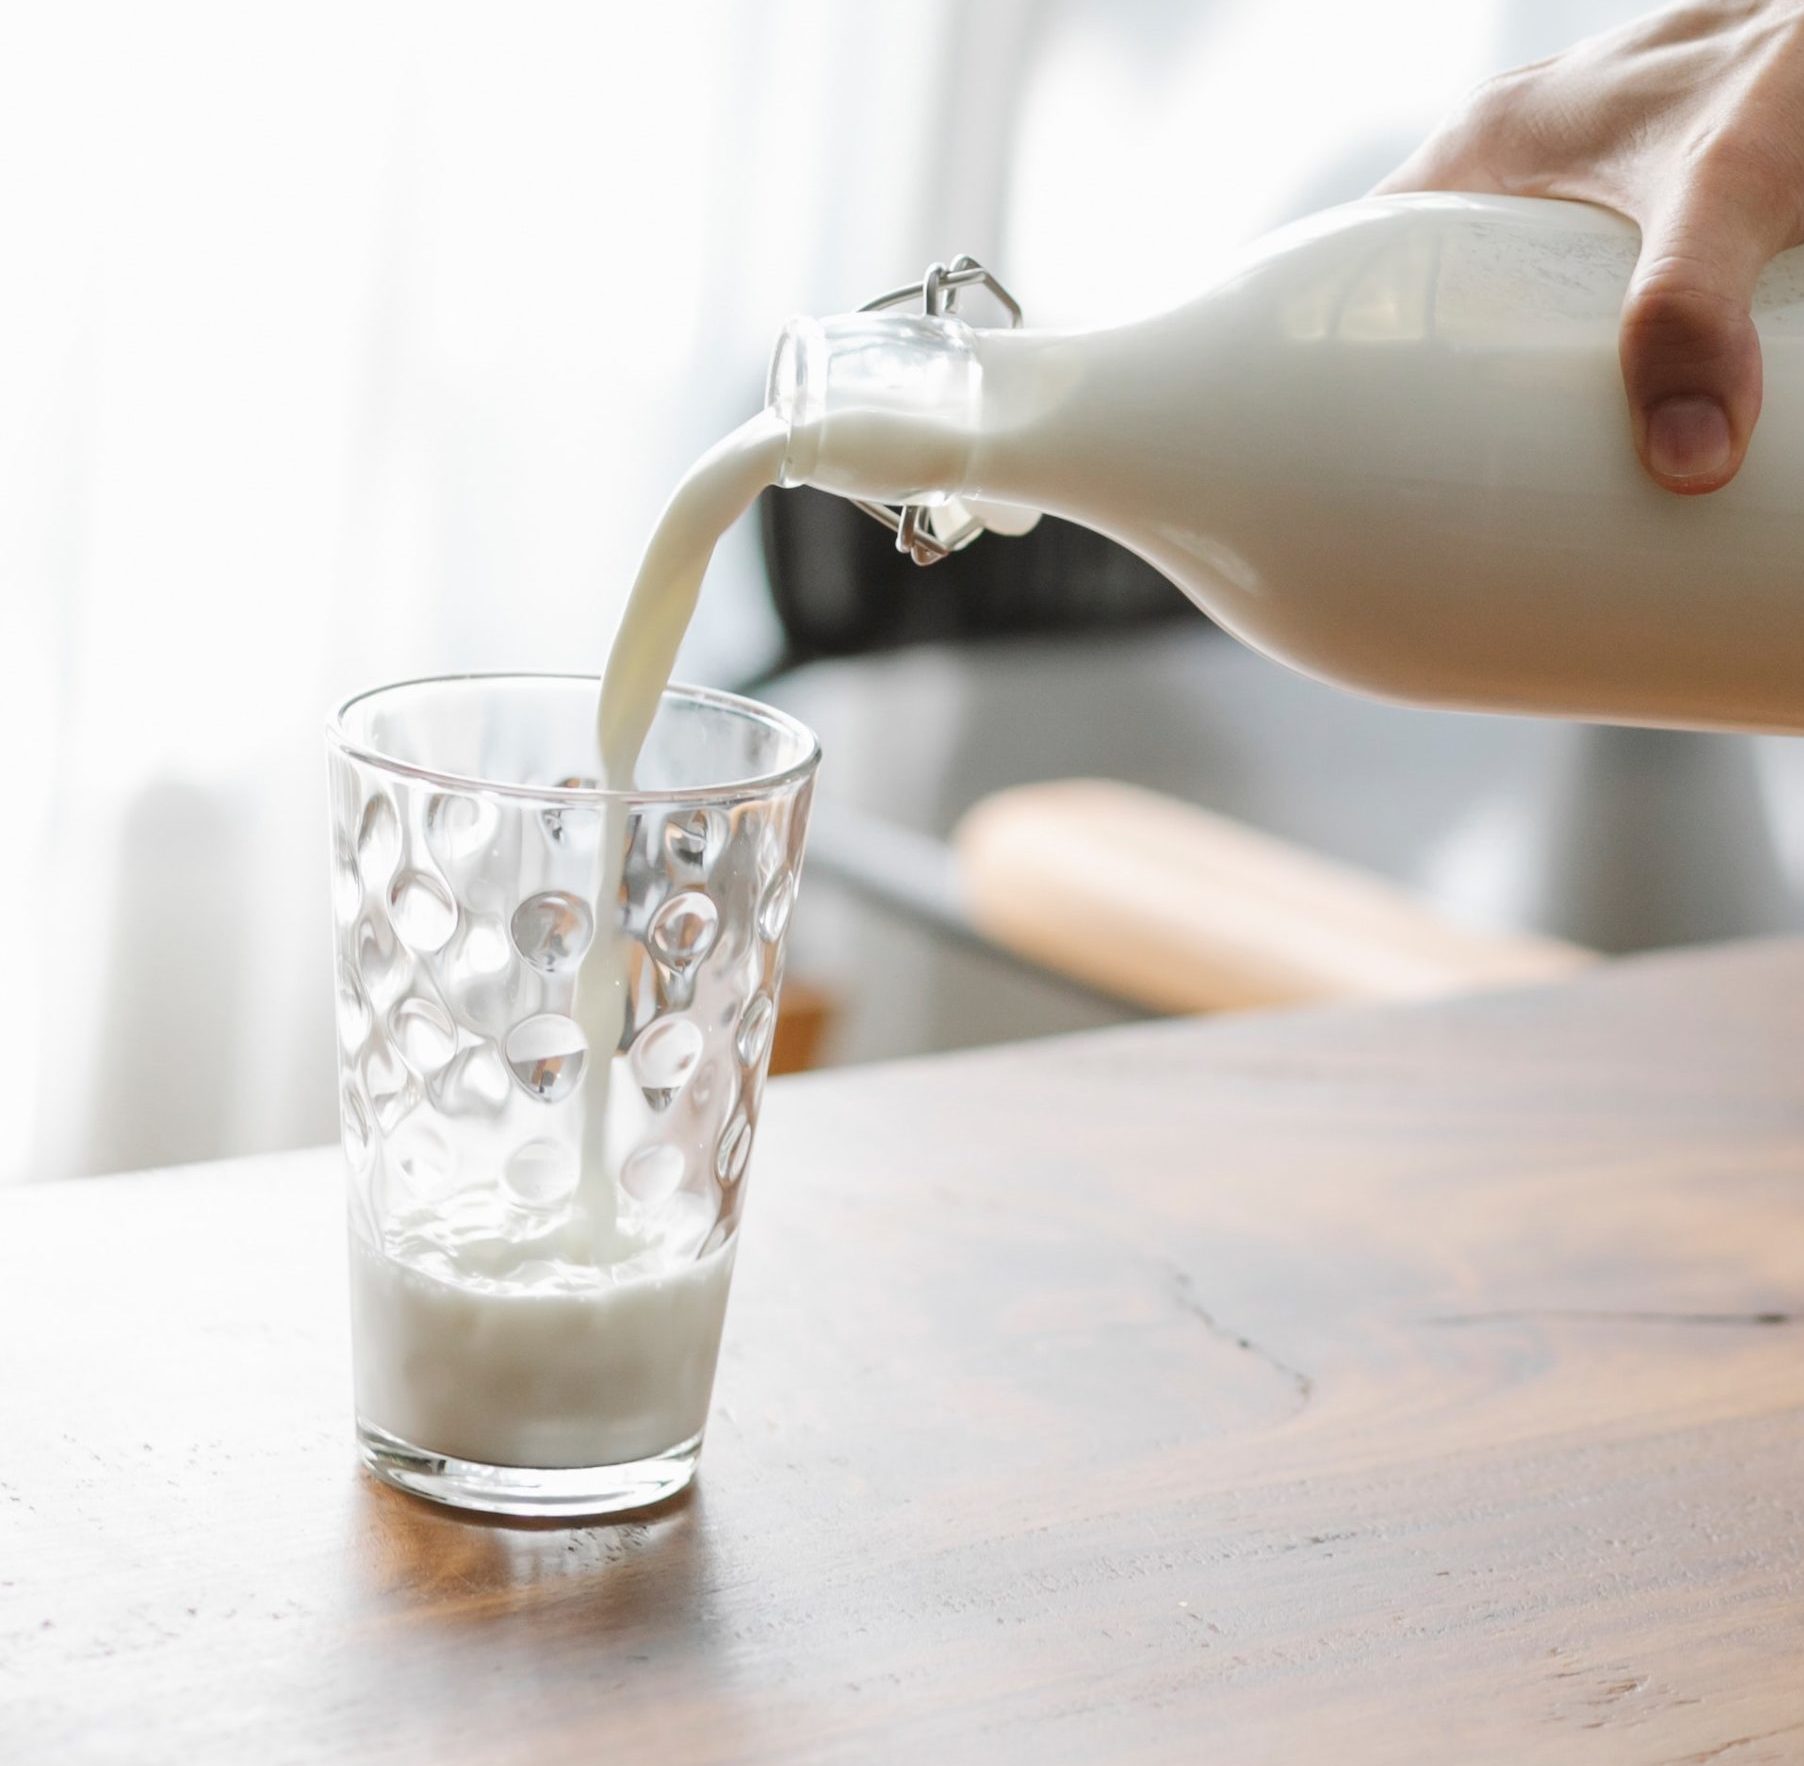 La startup ImaginDairy manufactura productos lácteos sin origen animal que tampoco contienen lactosa, hormonas de crecimiento ni colesterol. Foto: Charlotte May/Pexels.